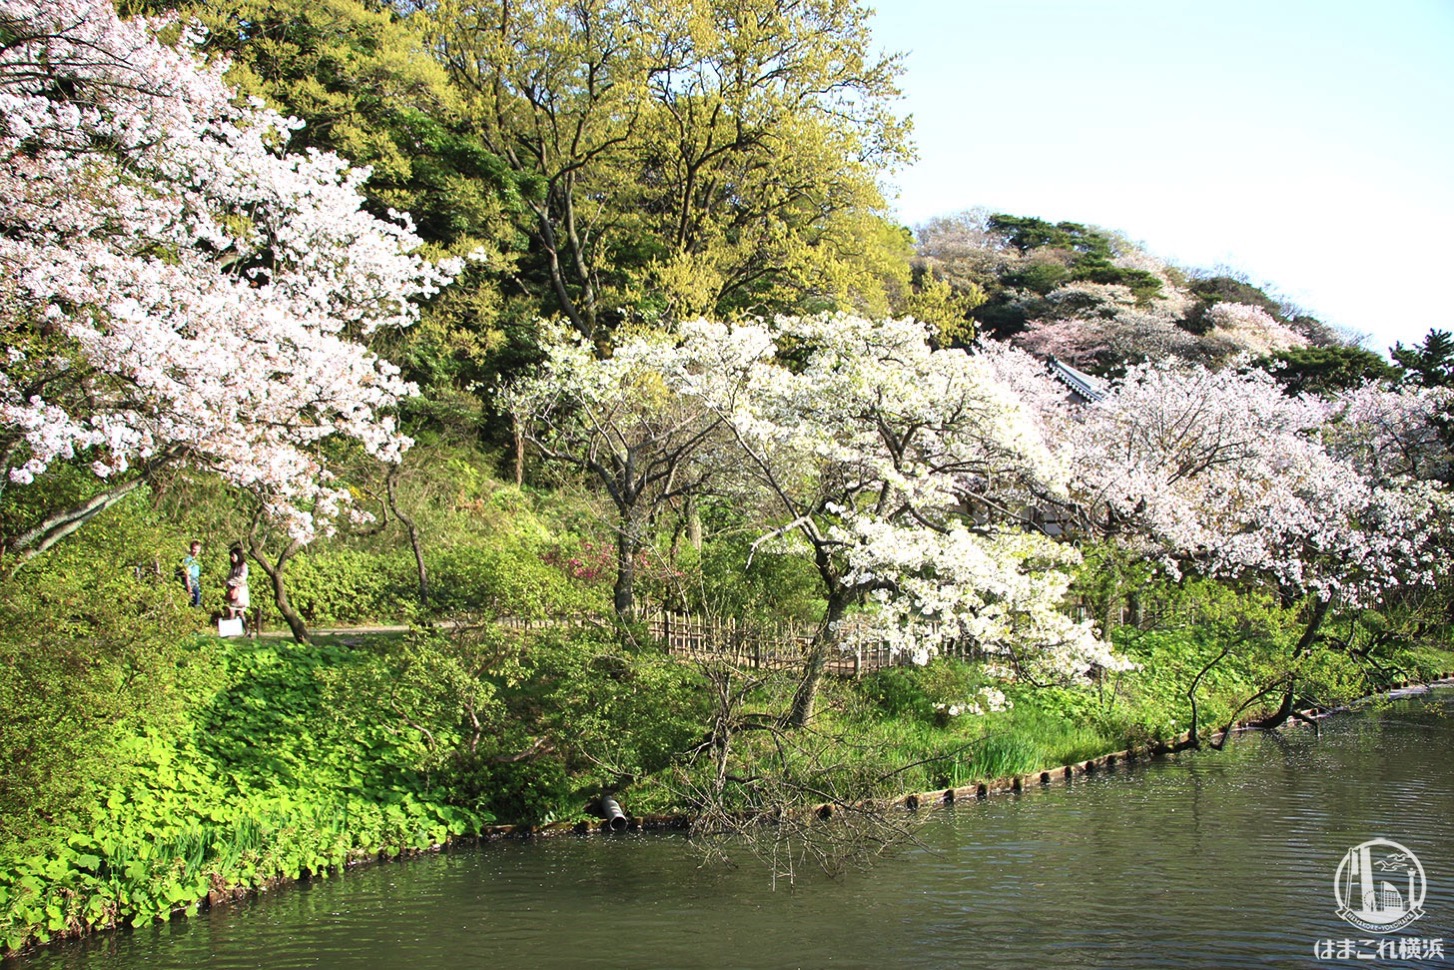 三渓園 池に向かって咲く桜